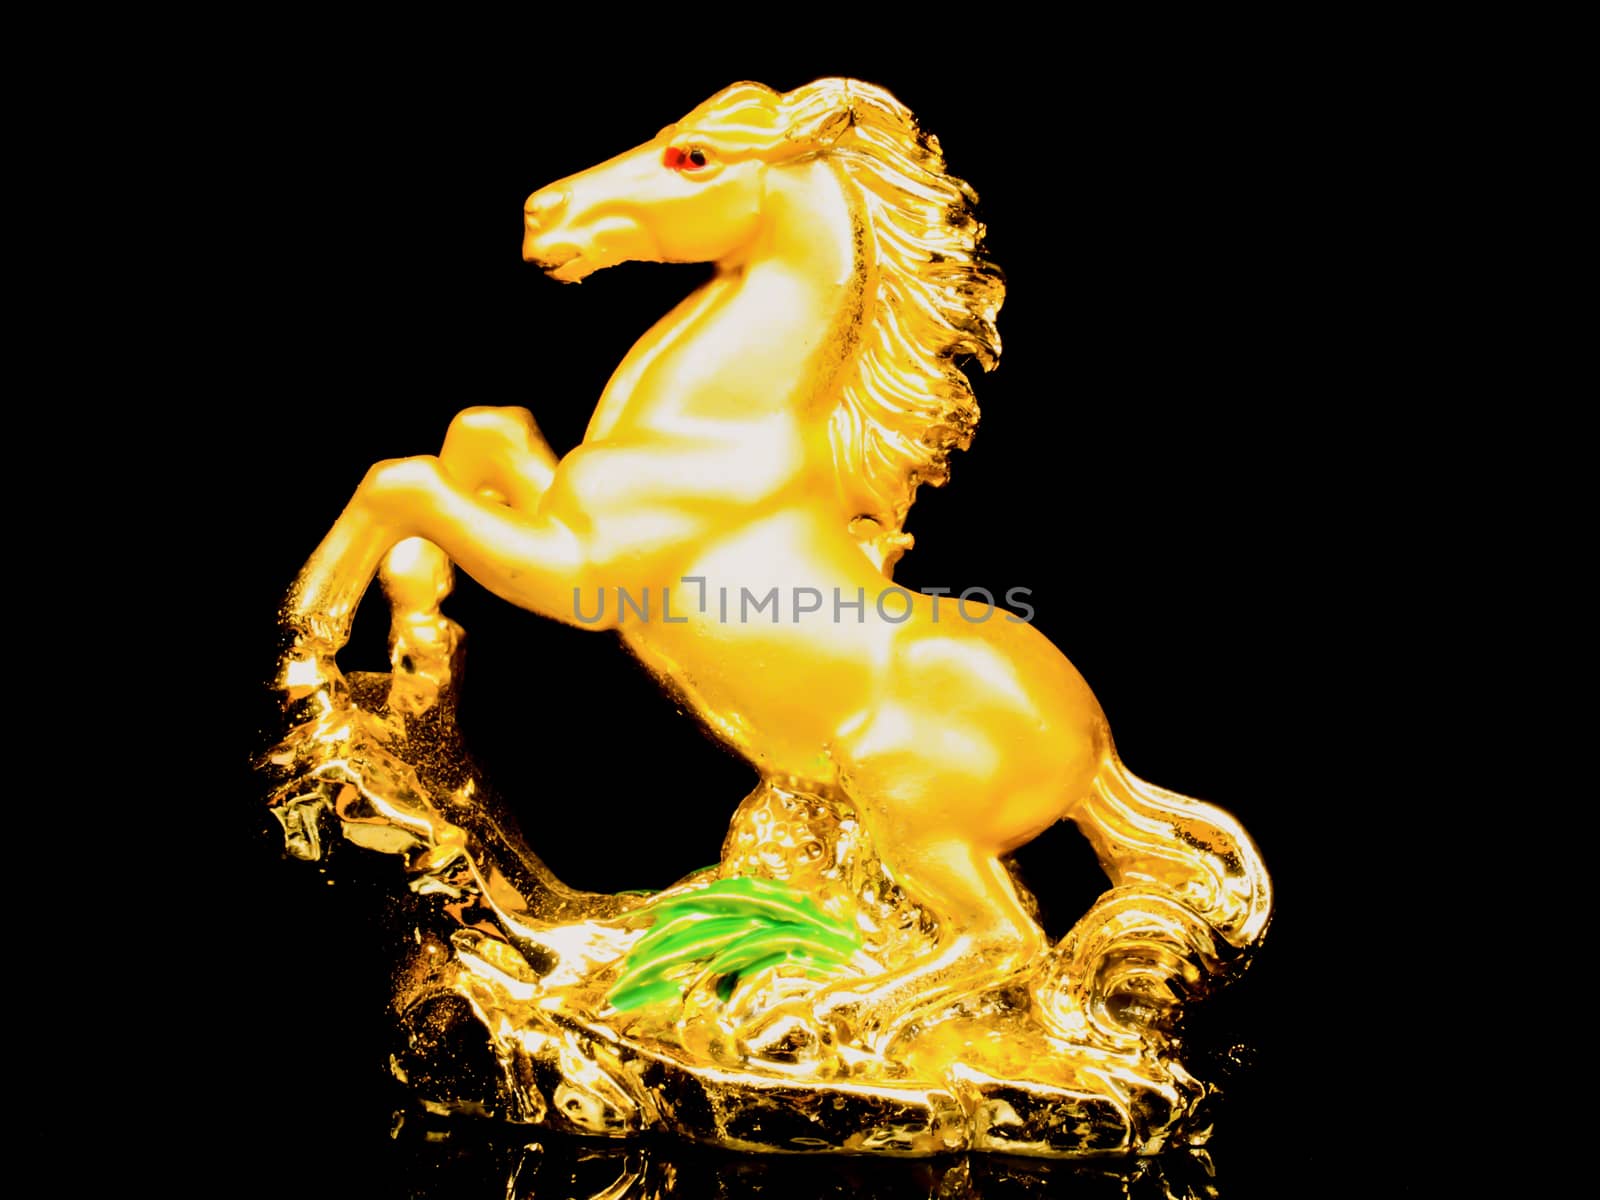 golden horse by wmitrmatr